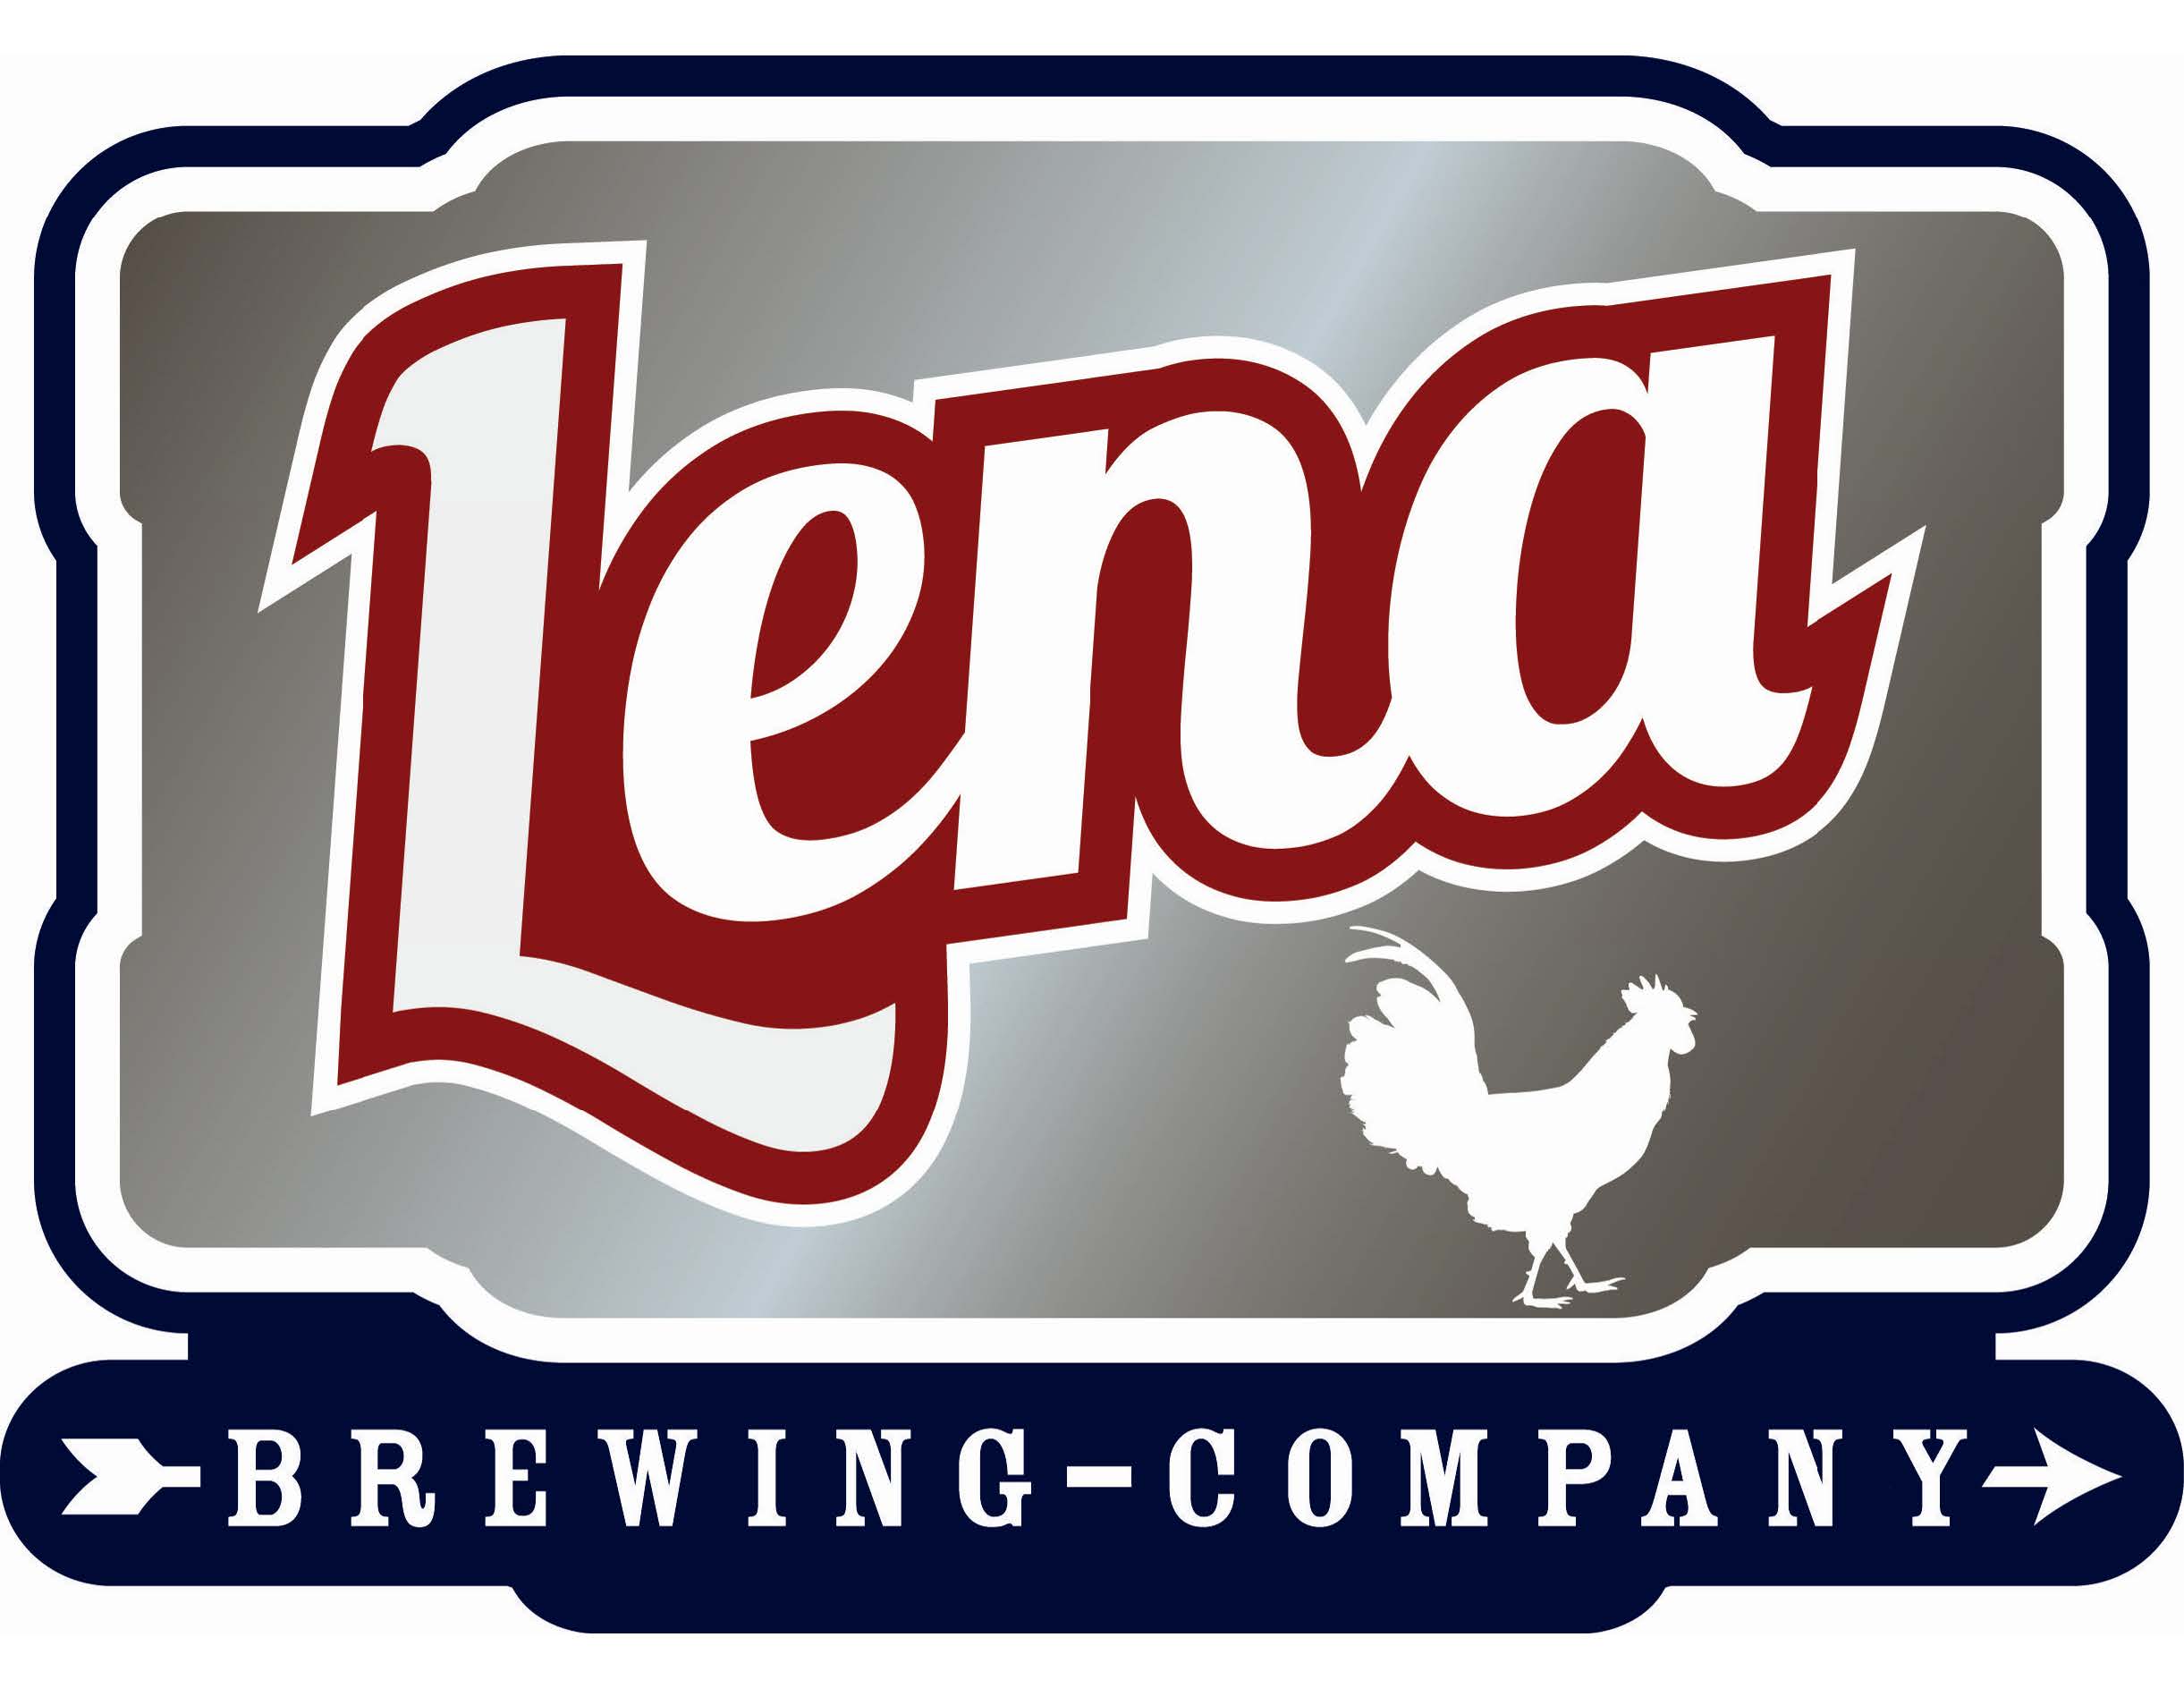 Lena Brewing Company